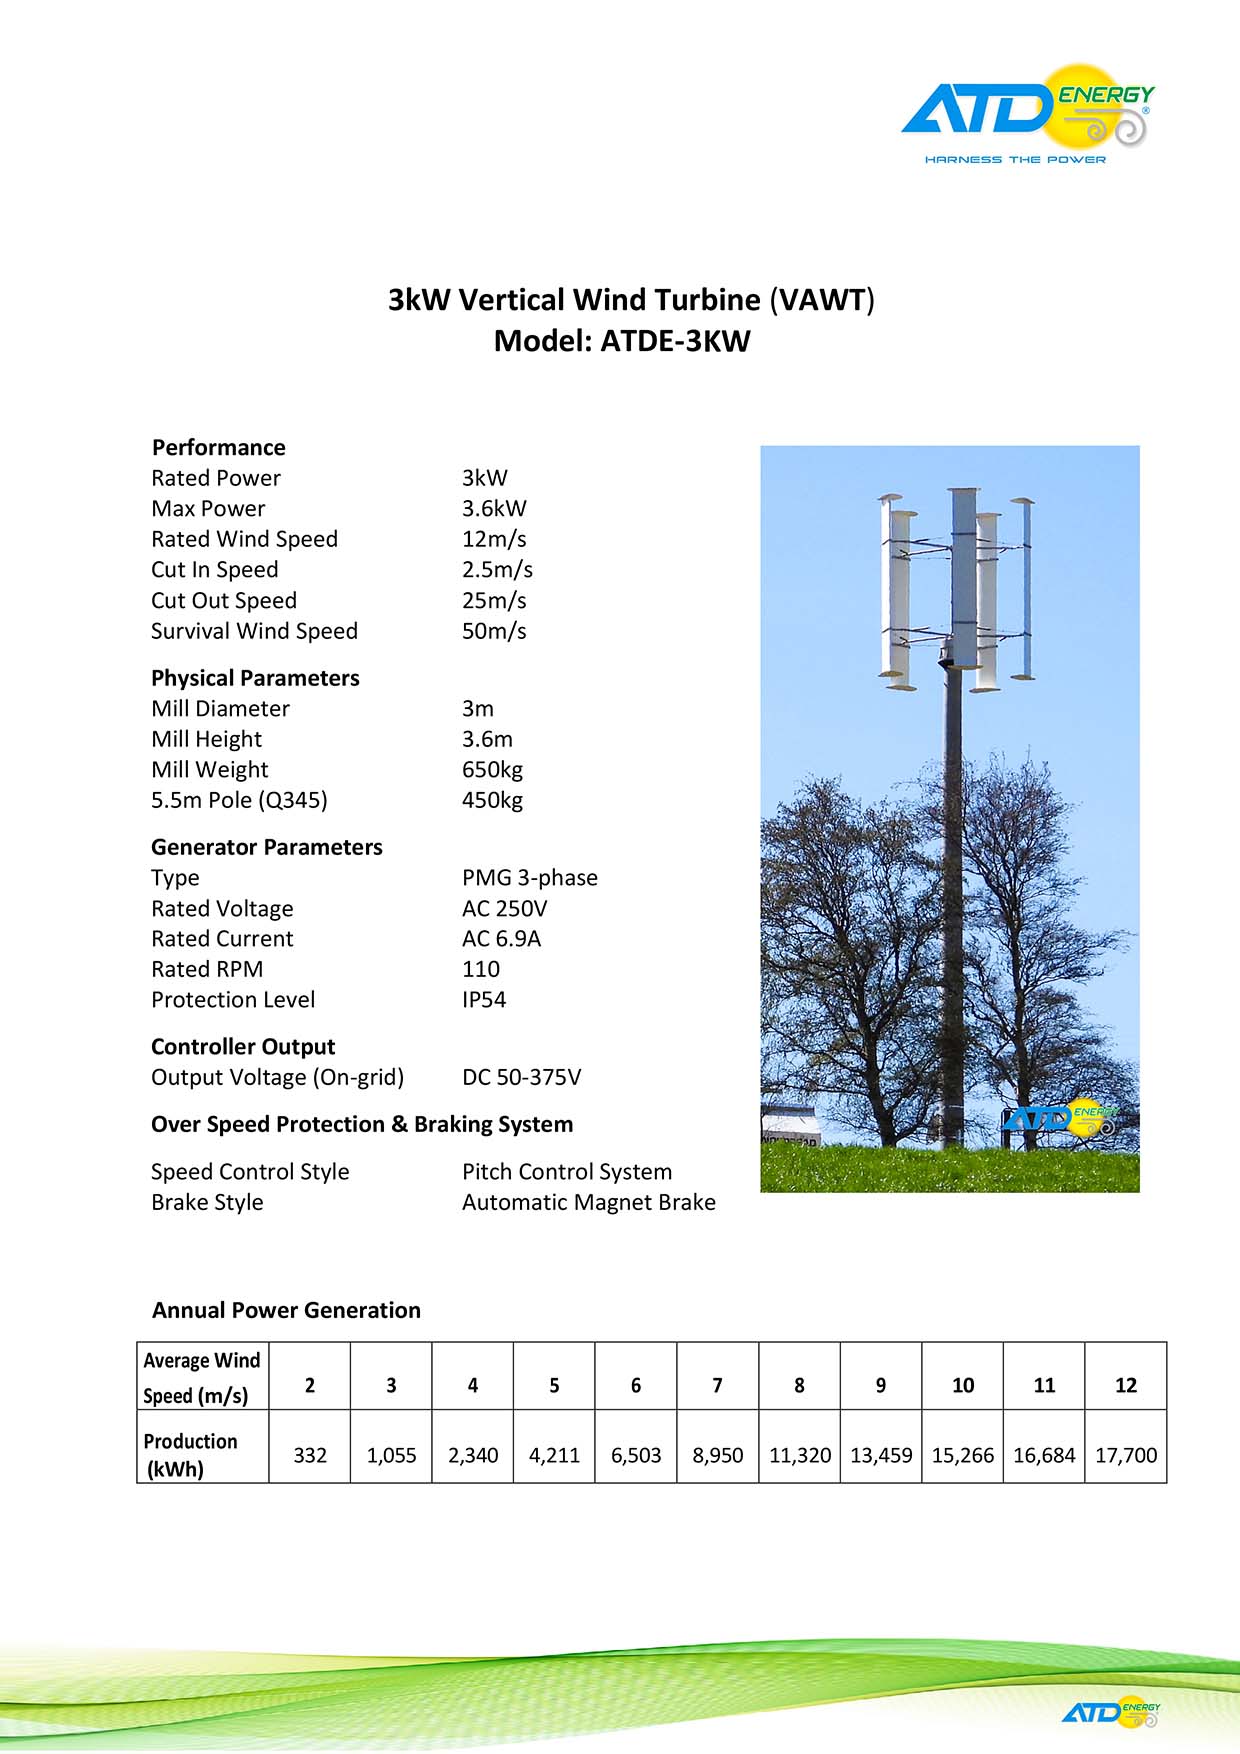 3kW Vertical Wind Turbine Model ATDE-3KW specifications